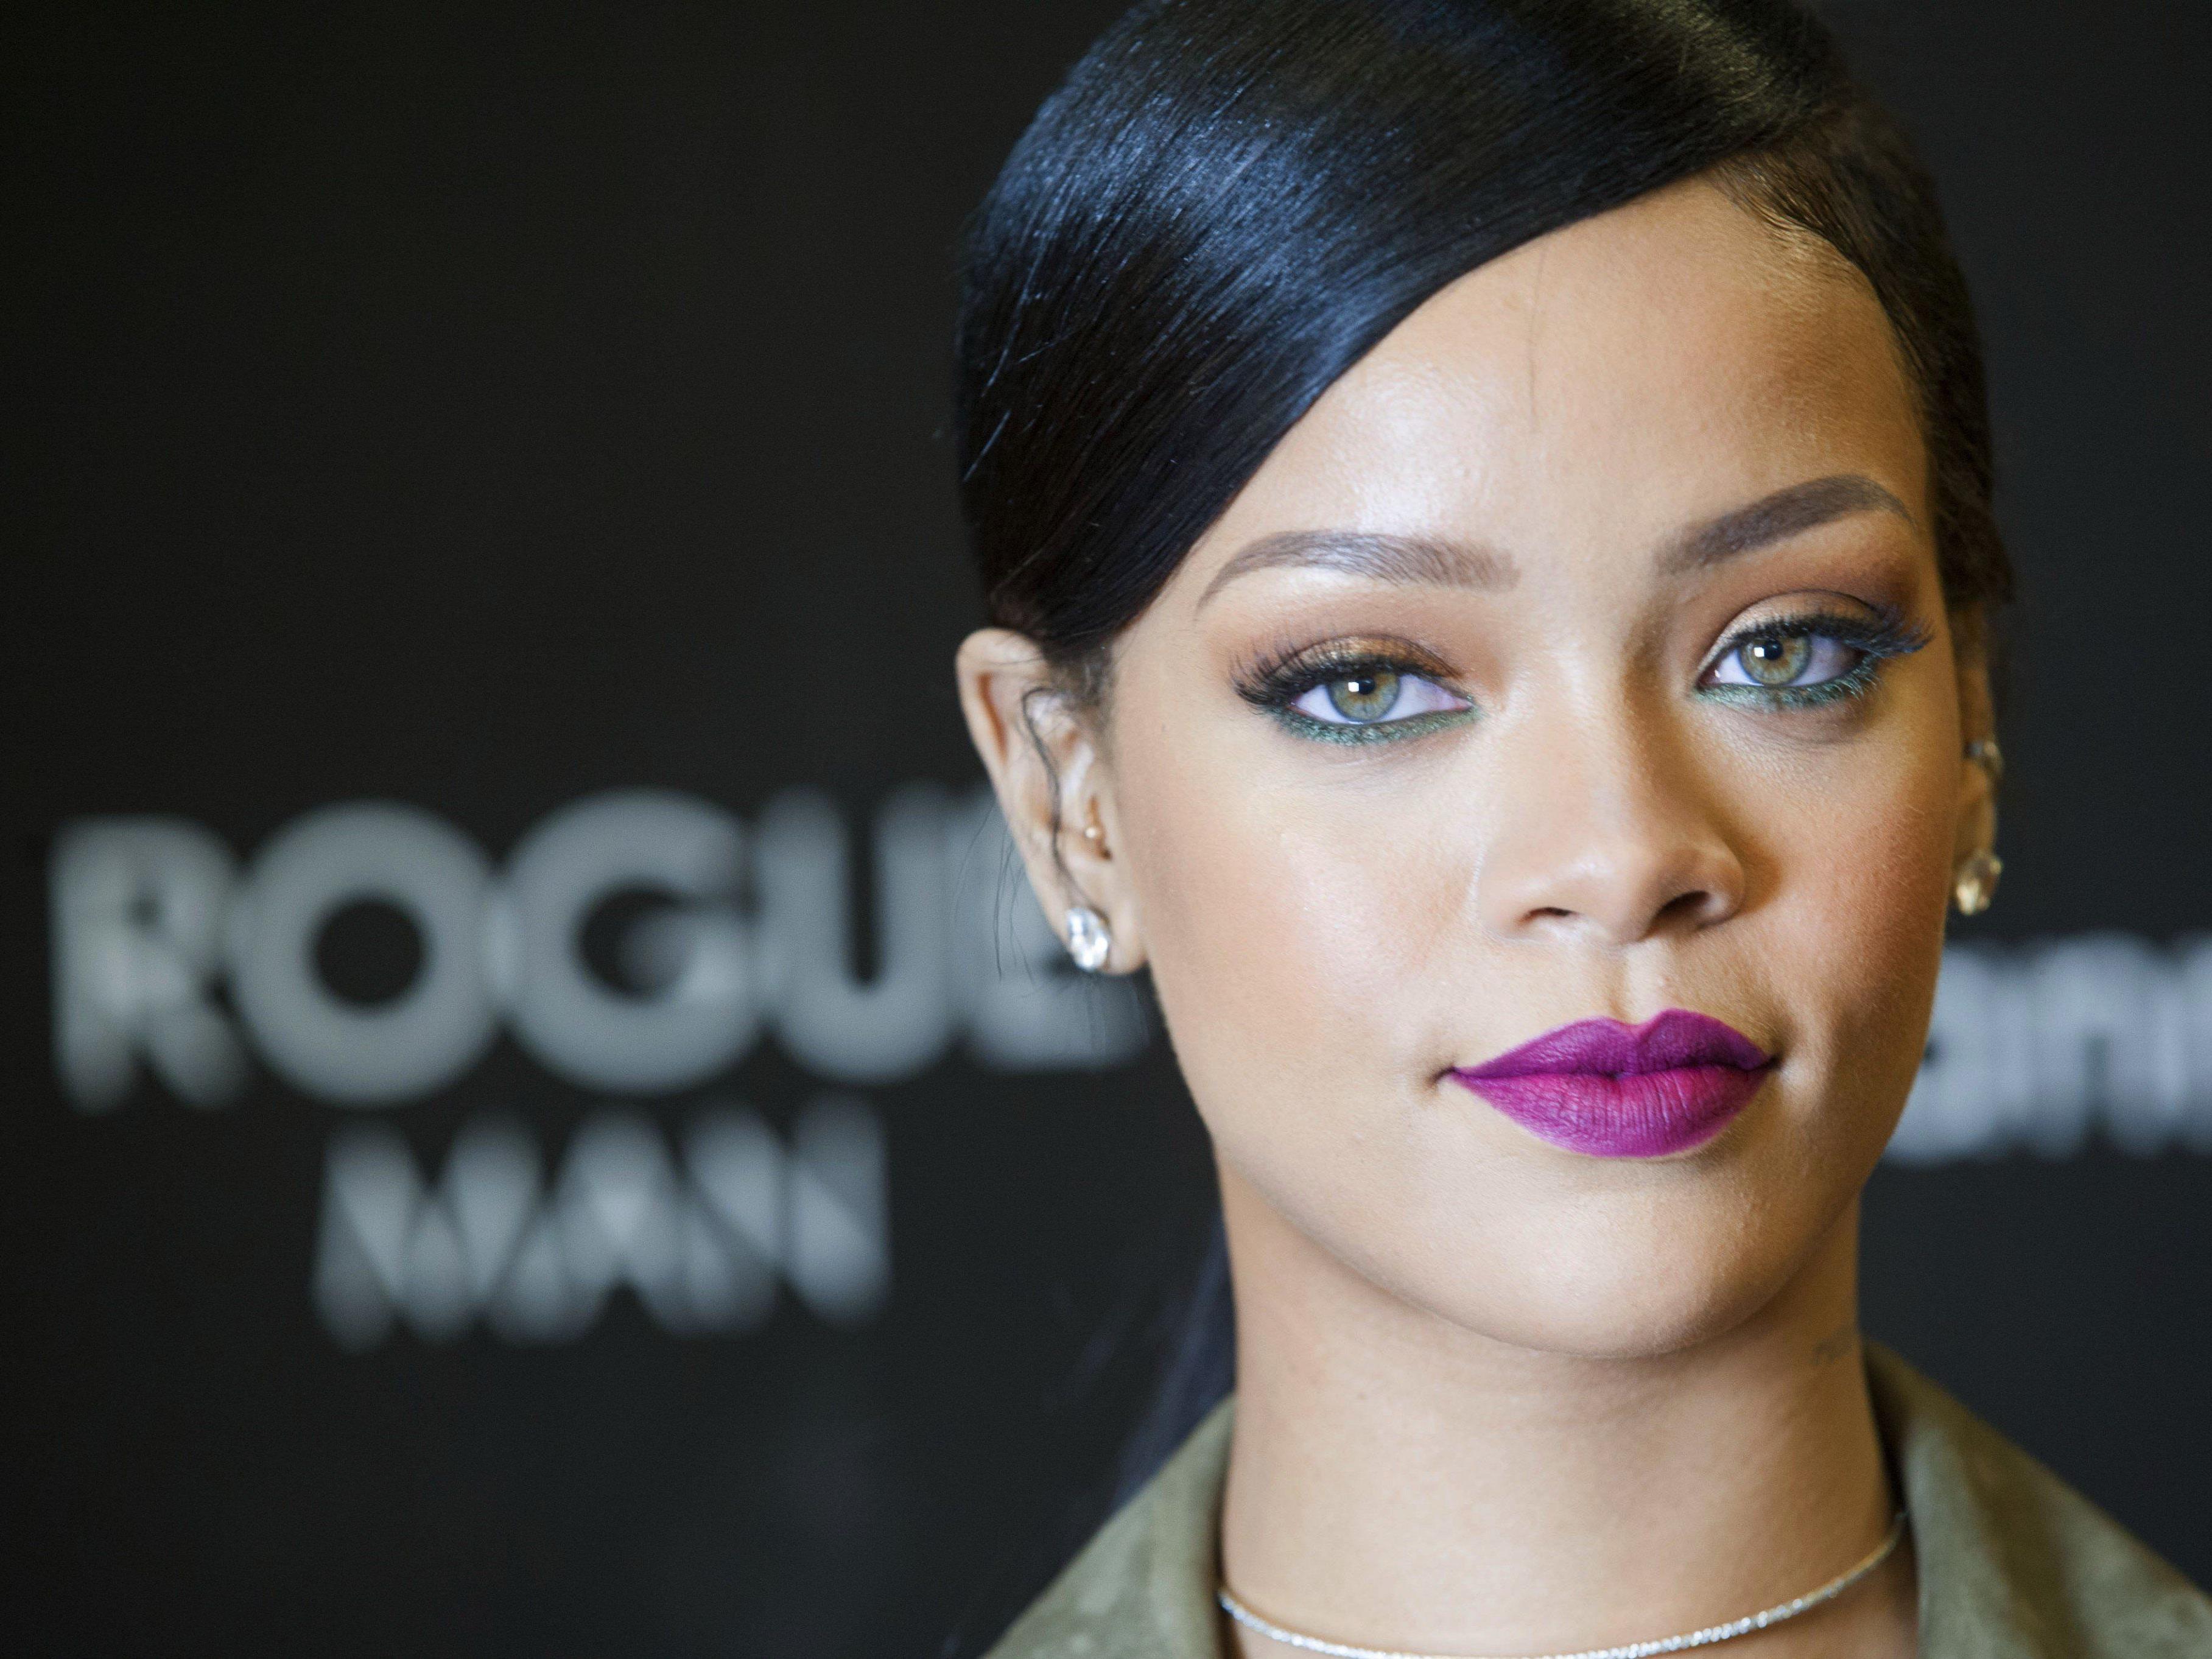 Rihanna ist die Königin der Selfies und gibt ihr Wissen nun scheinbar weiter.